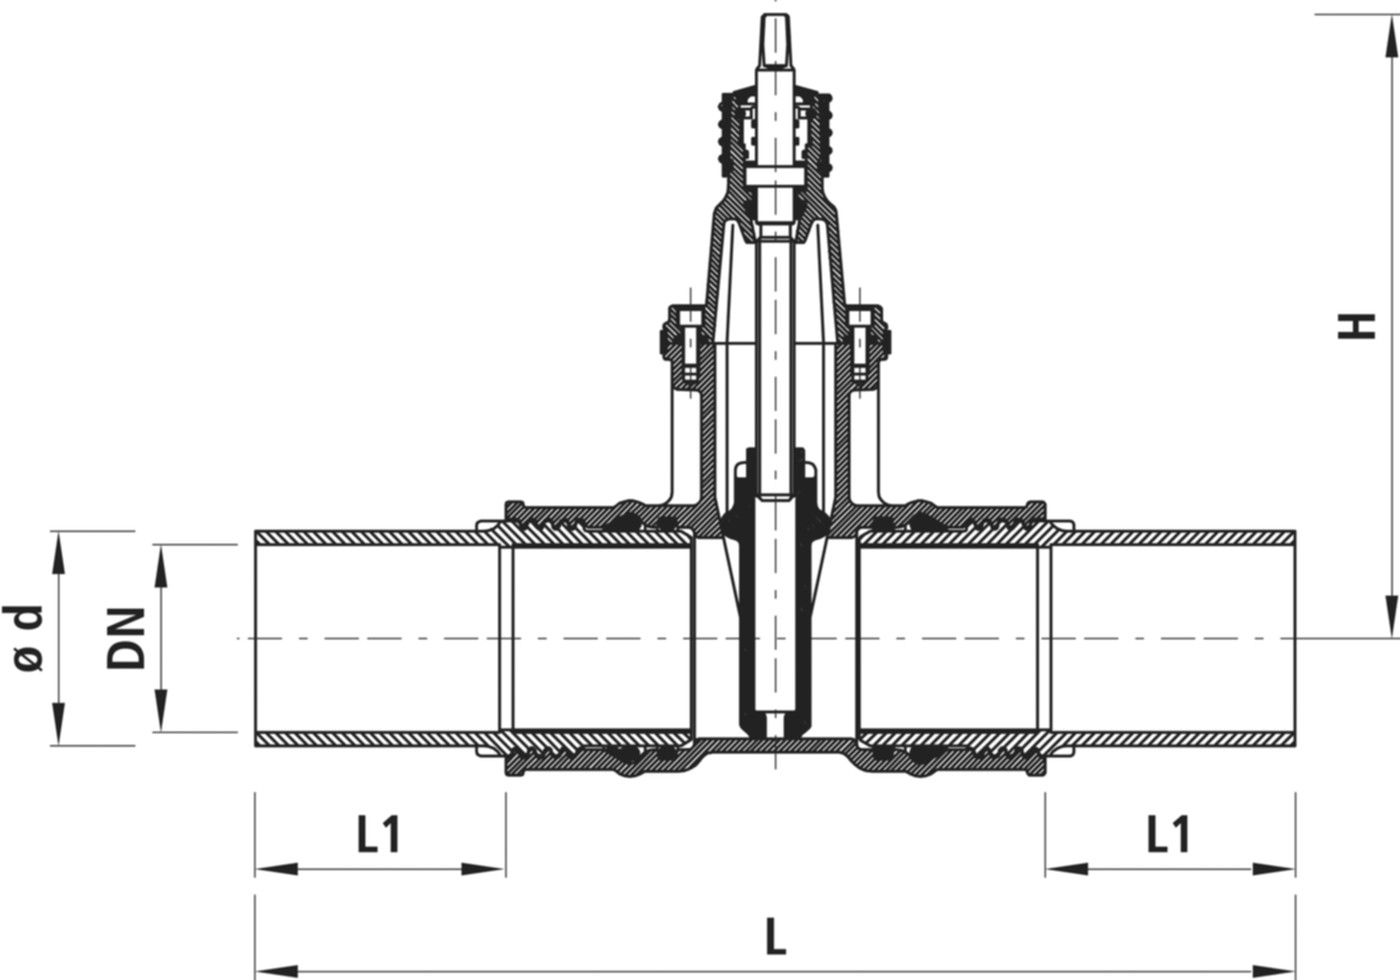 Einschweiss-Schieber für Gas 4815 DN 150 / d 180mm - Hawle Armaturen